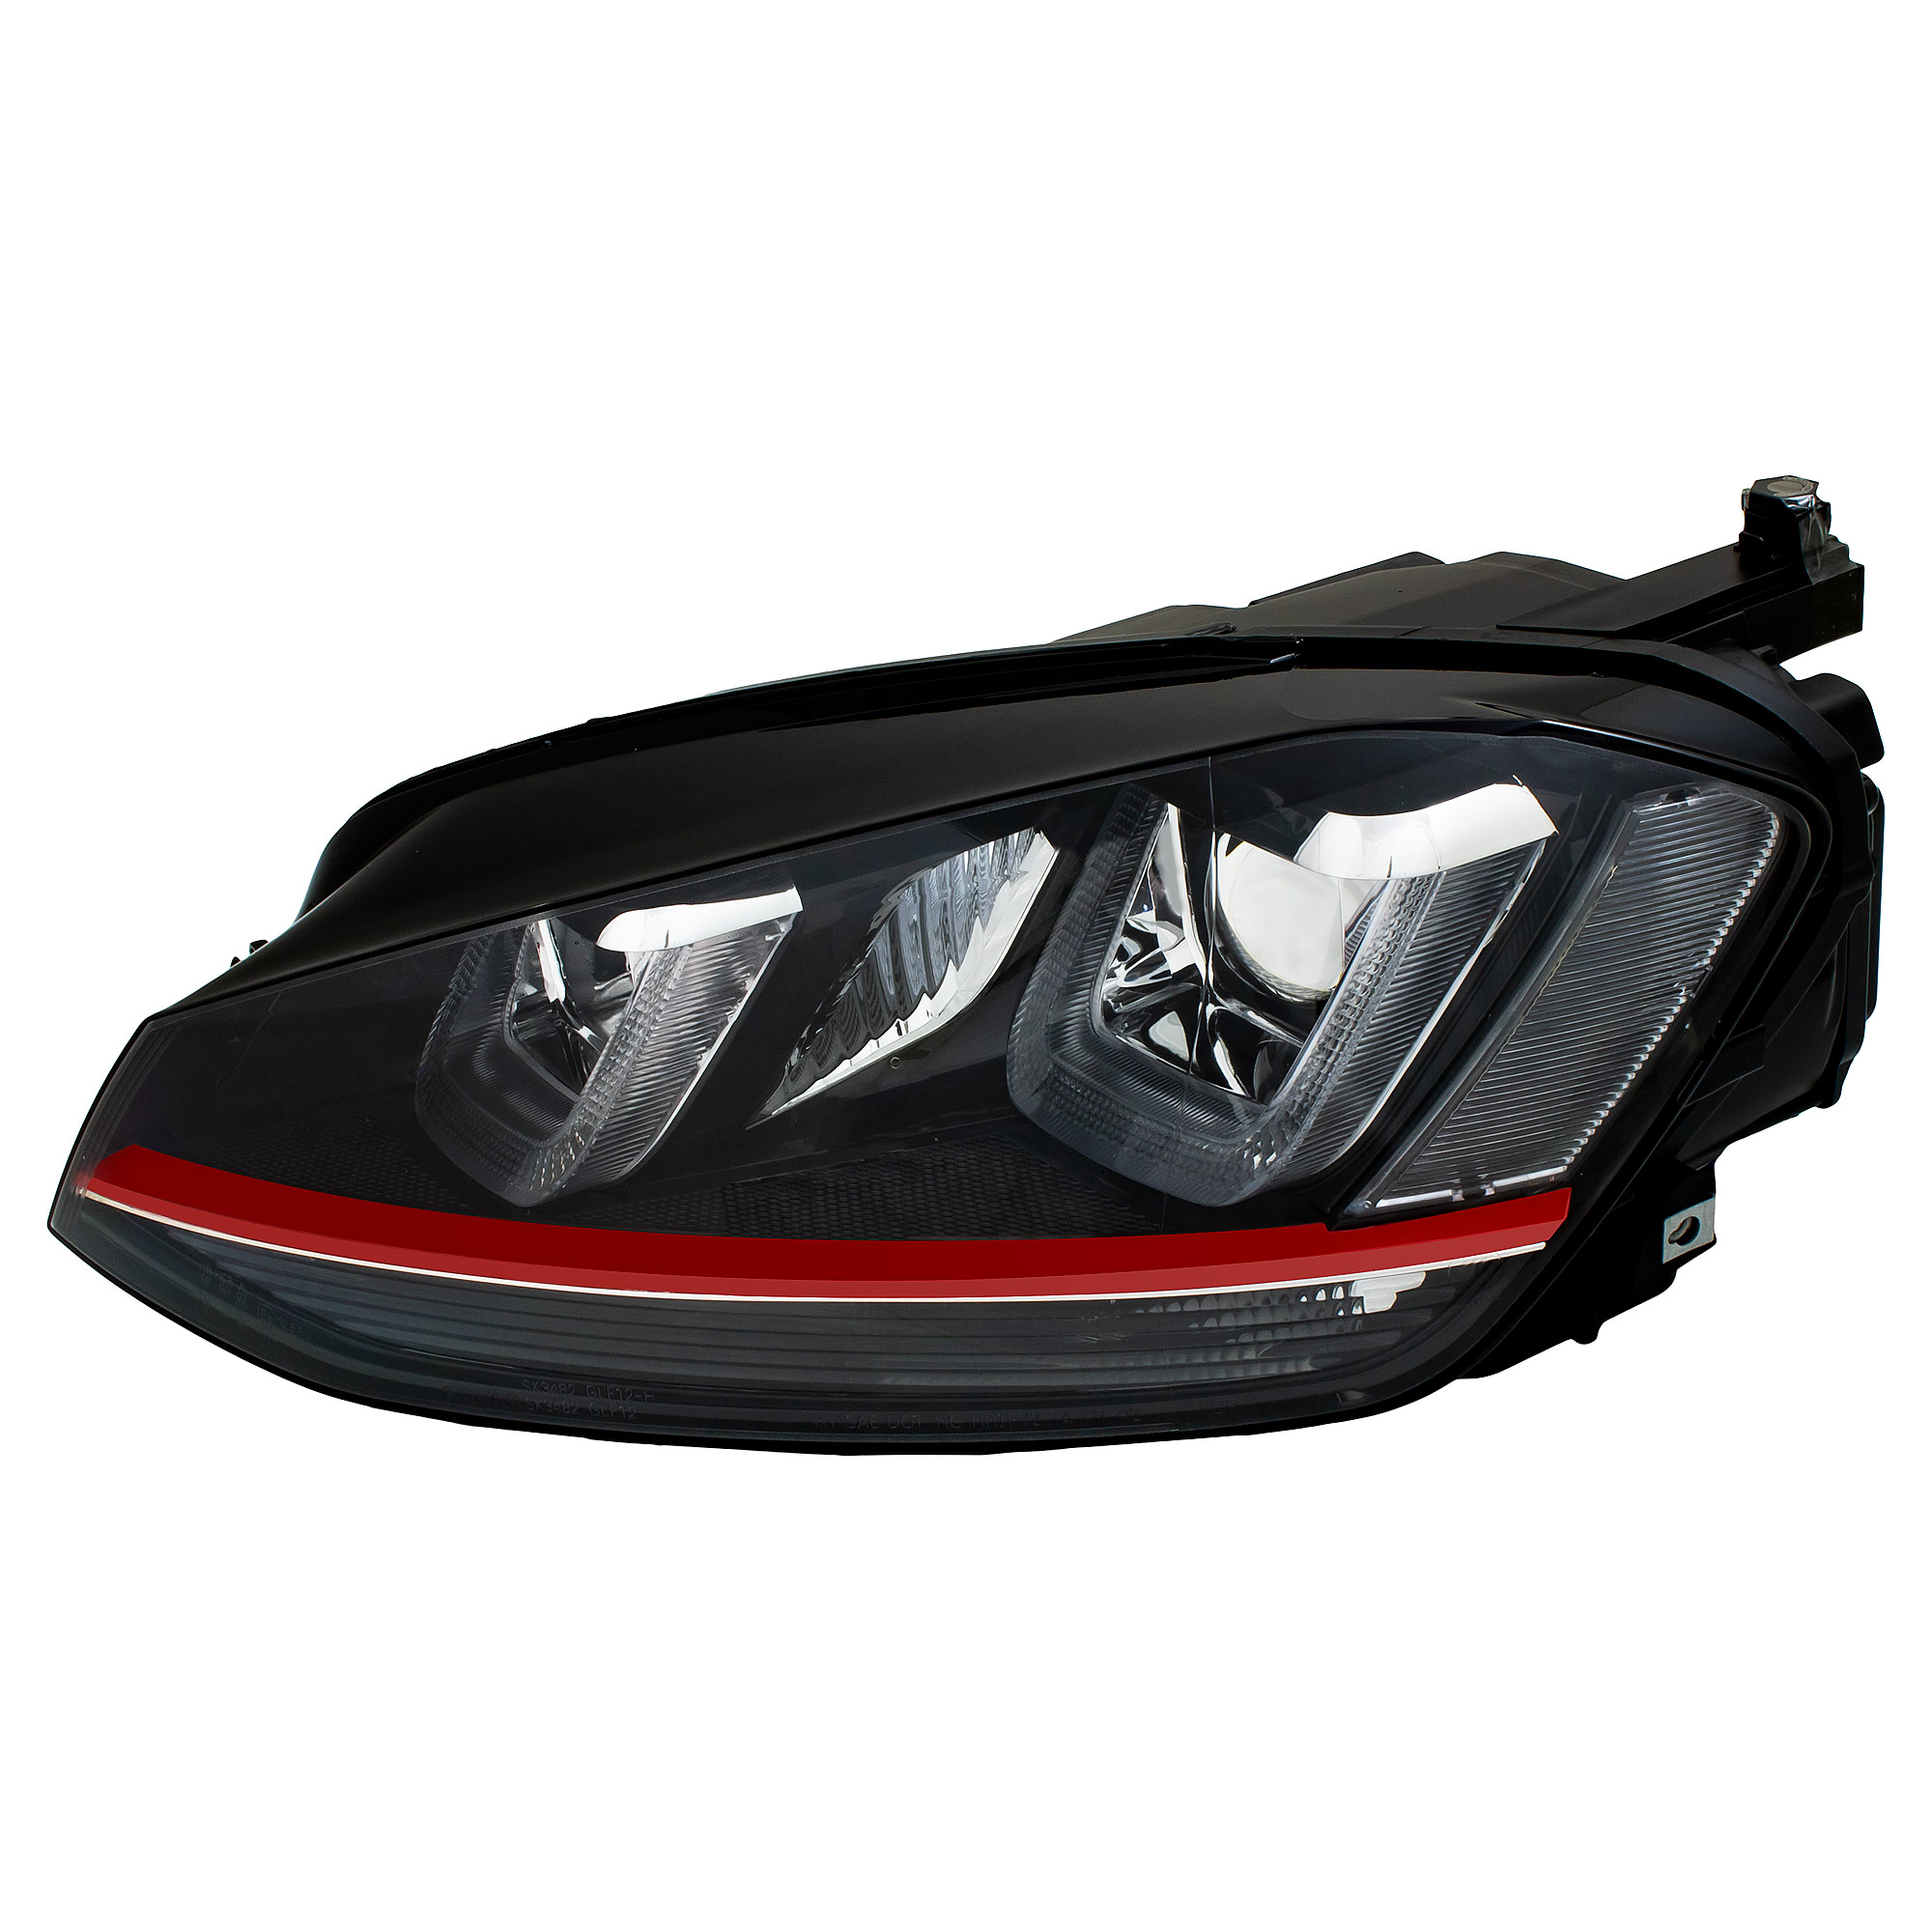 Scheinwerfer Set 3D U LED Tagfahrlicht für VW Golf 6 VI Bj. 08-13 rote Leiste